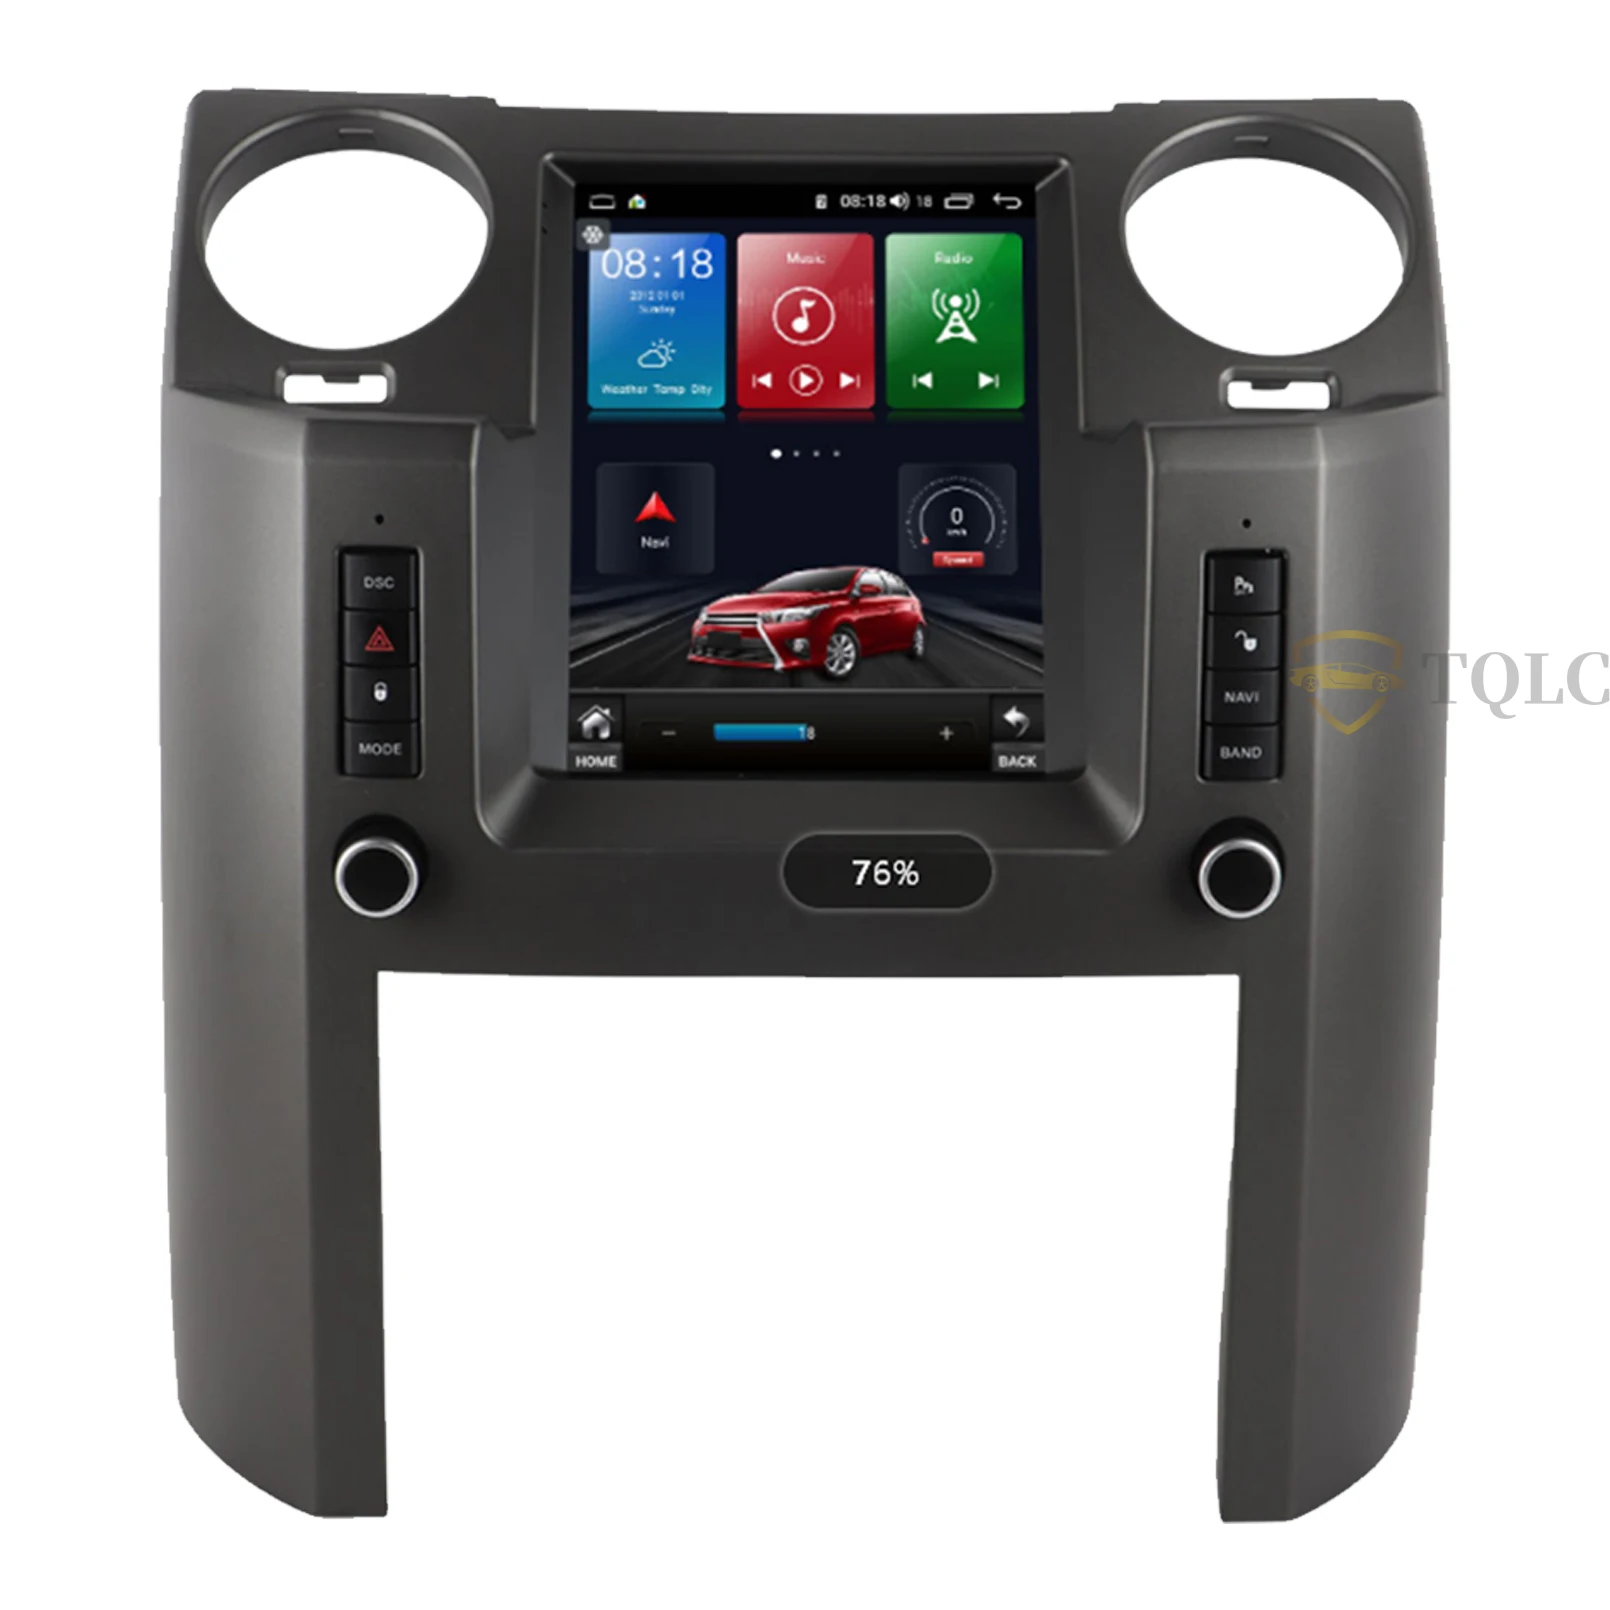 Автомобильное радио TQLC Android в вертикальном стиле Tesla Для Land Rover Discovery 3, 9,7-дюймовый DVD-мультимедийный плеер, стерео GPS-навигация Изображение 1